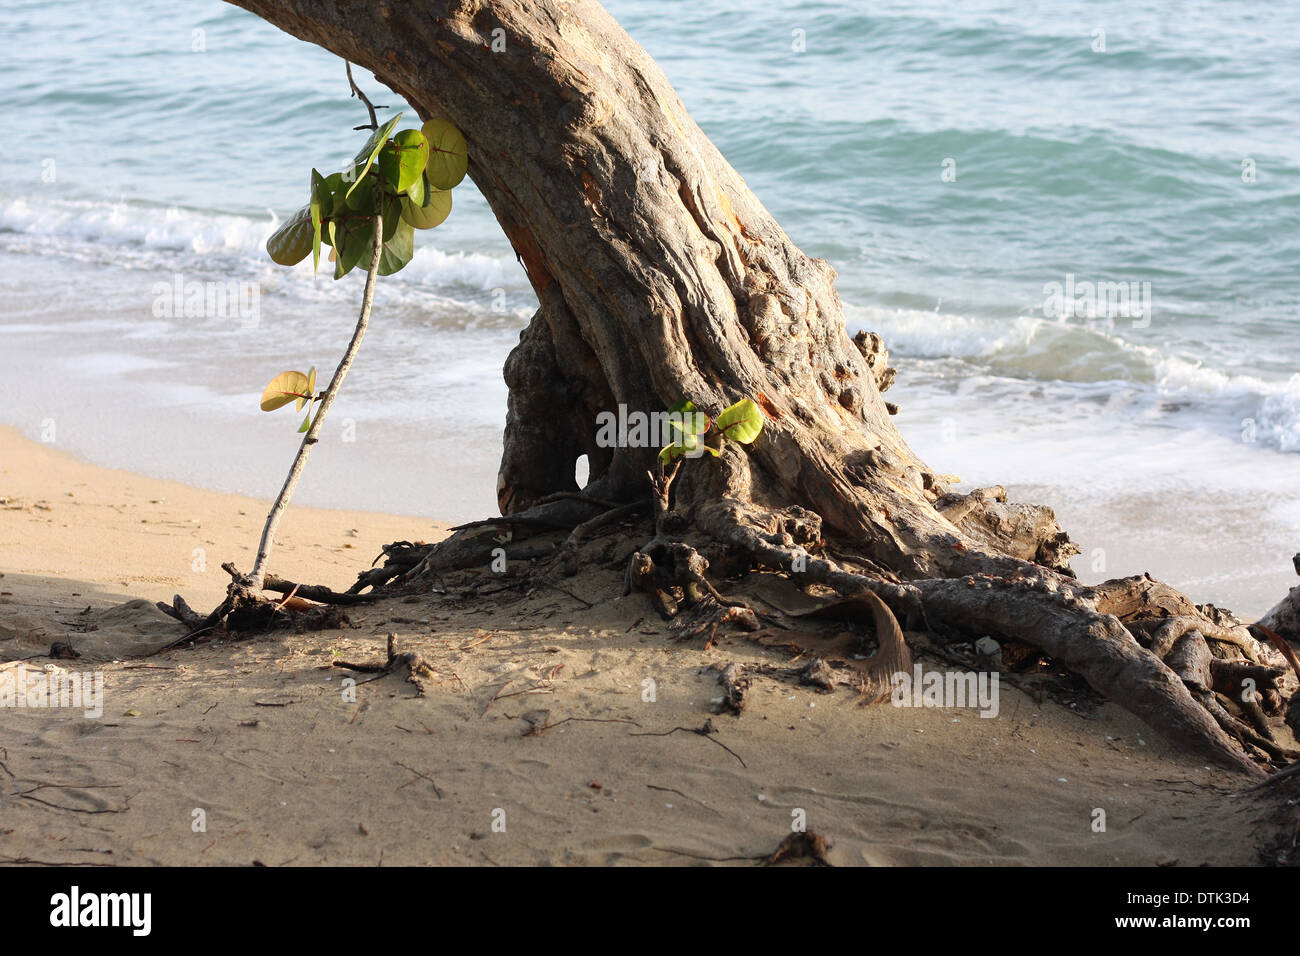 Arbre qui pousse sur la plage dans les Caraïbes Banque D'Images